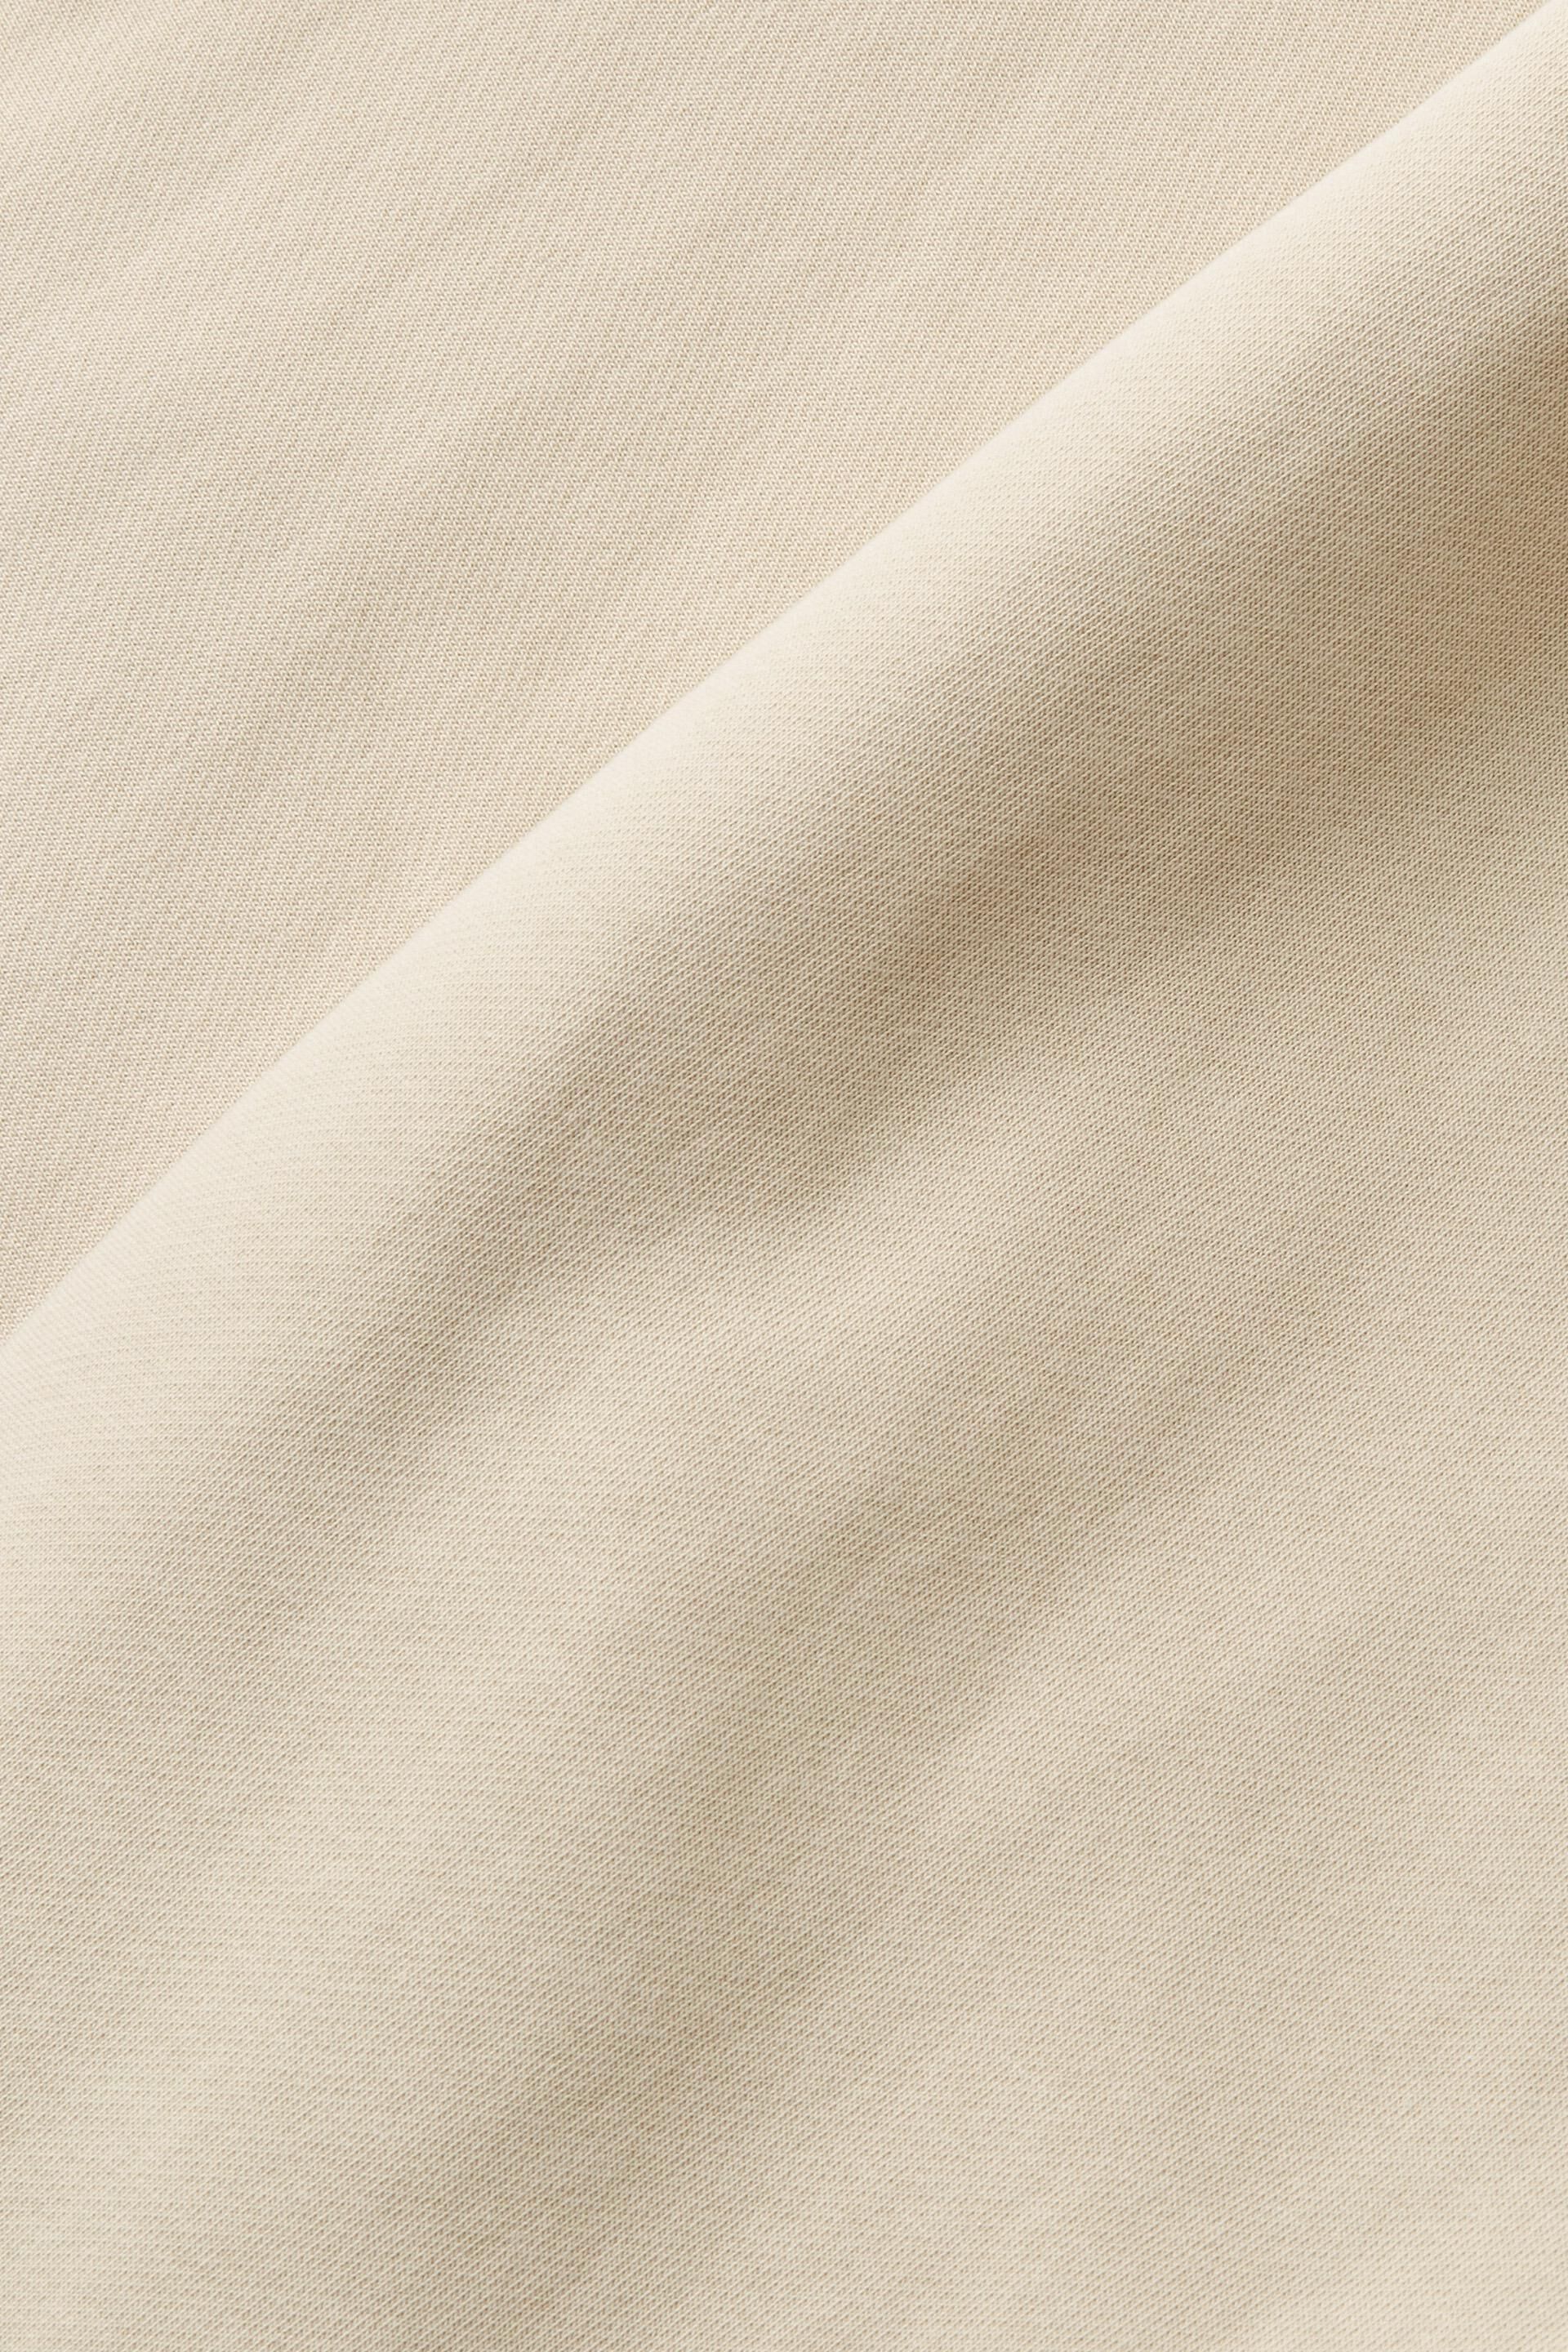 Esprit Damen Kurzer Kapuzenpullover mit Reißverschluss und auf der Logo-Print Rückseite